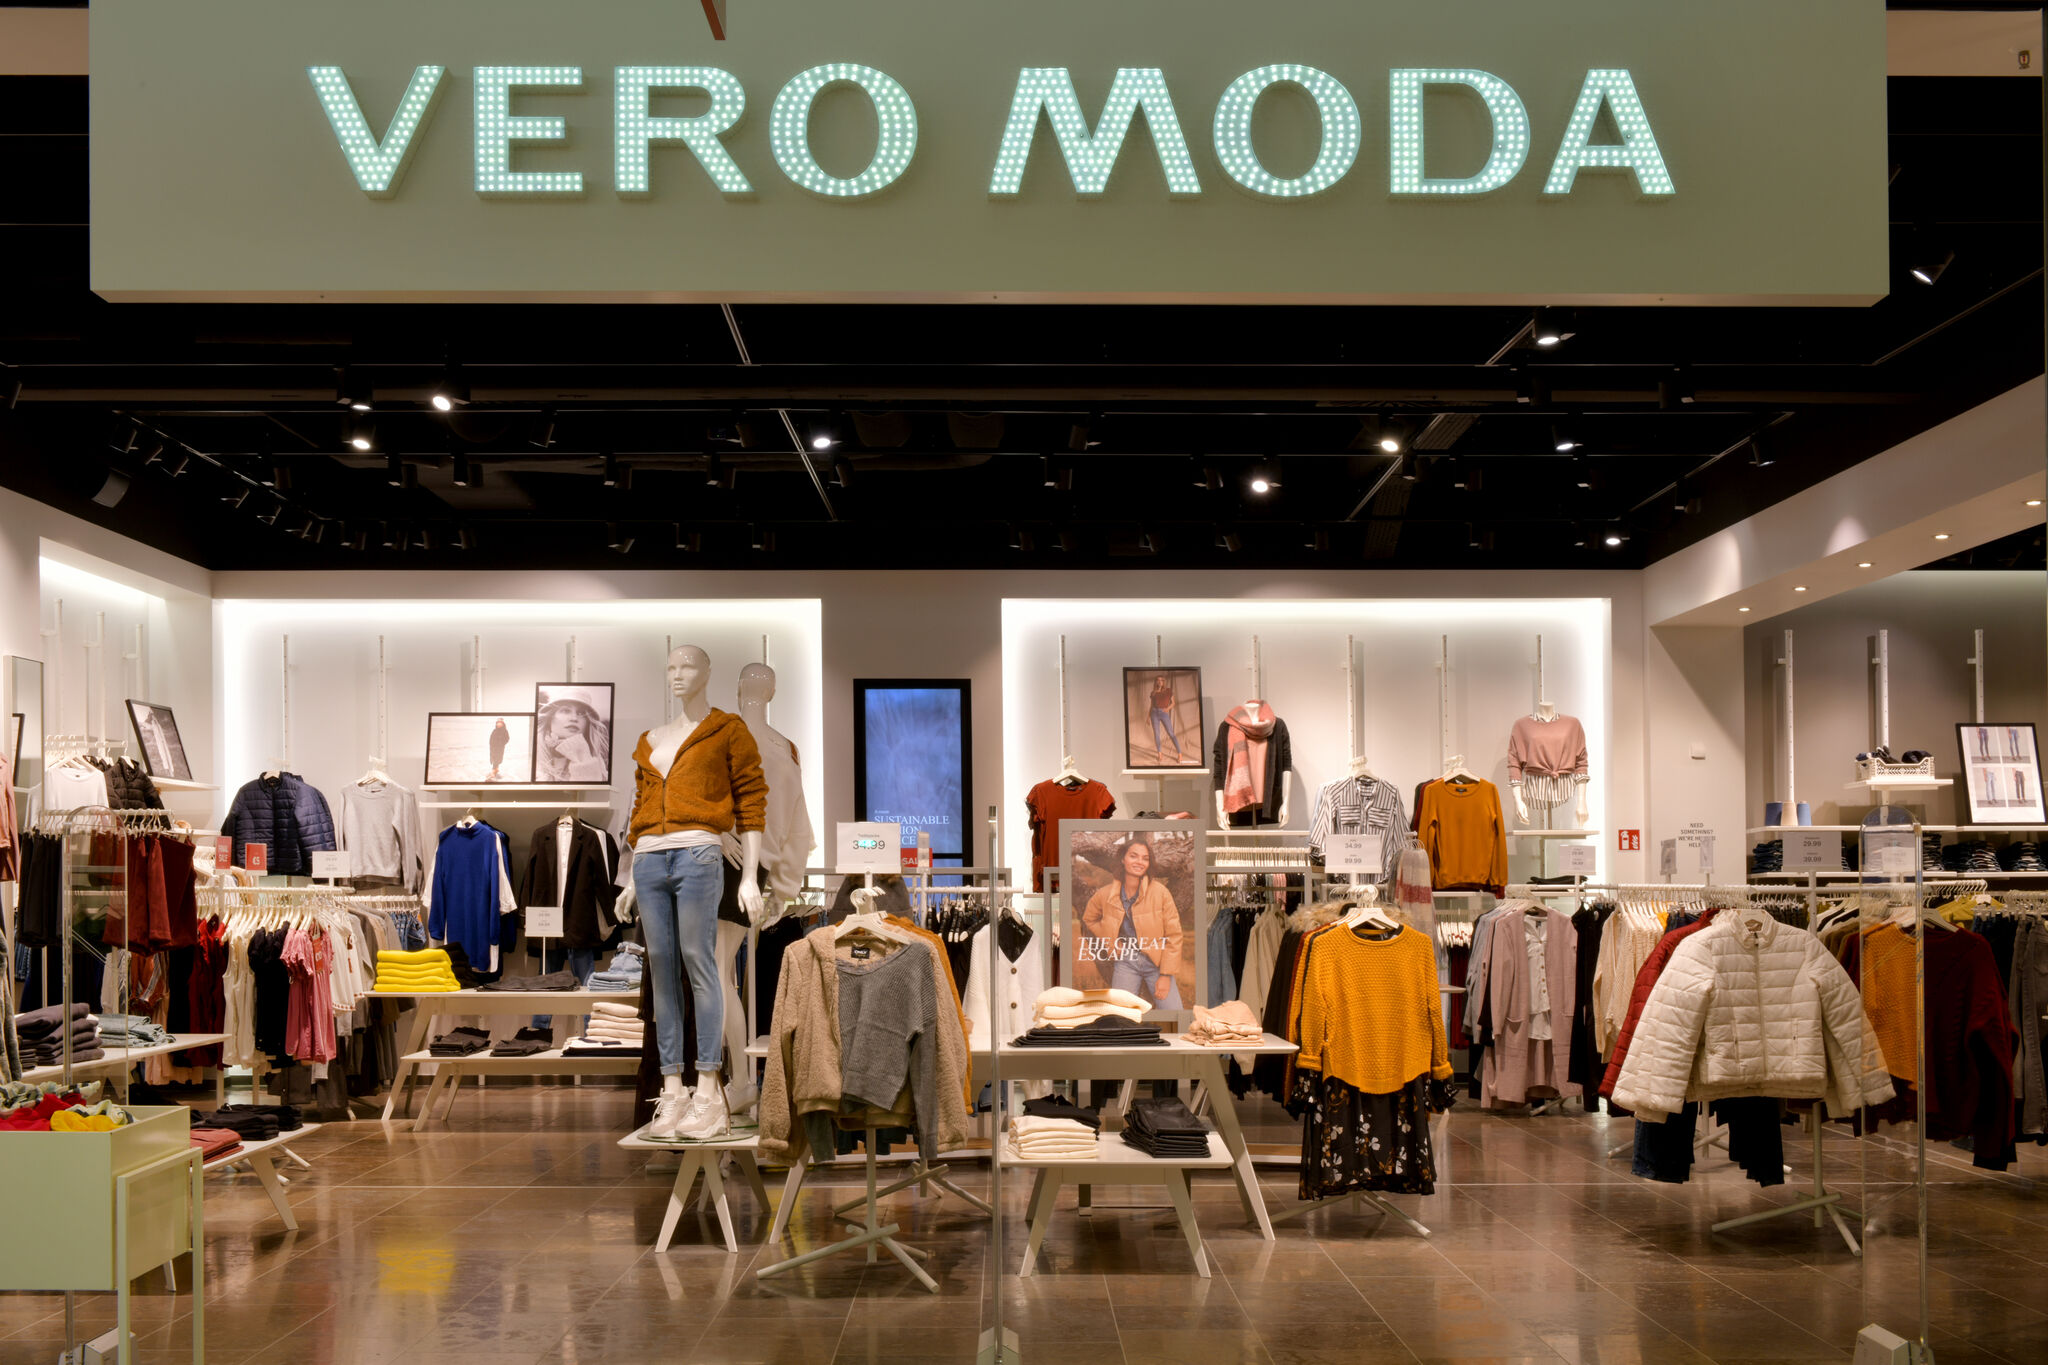 Se tilbage Gammeldags Hellere VERO MODA - Donau-Einkaufszentrum